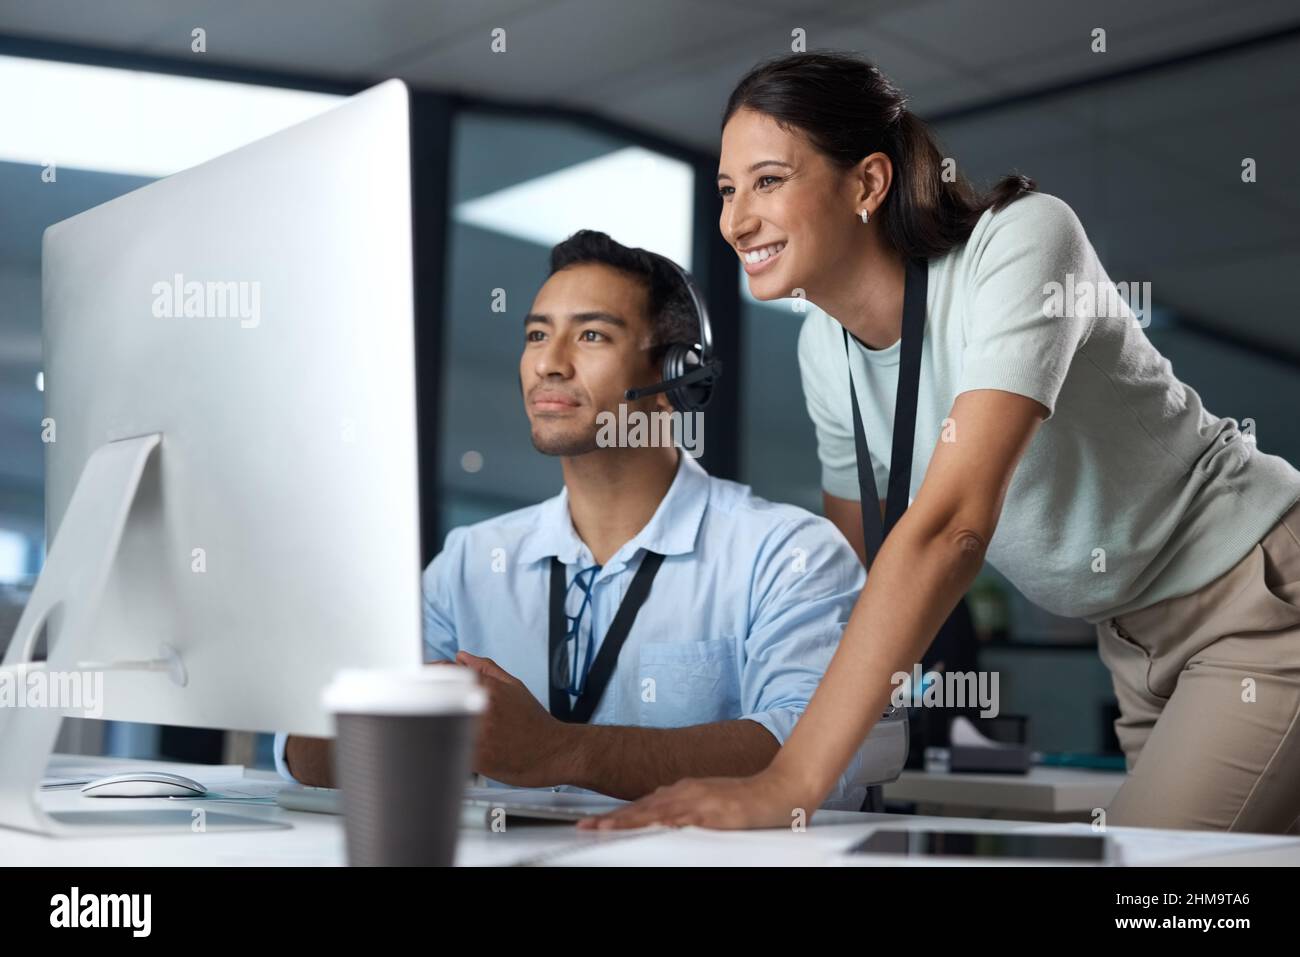 Weitergabe von sage-Kundenberatung. Aufnahme eines jungen Mannes und einer jungen Frau, die einen Computer benutzen, während sie in einem Callcenter arbeiten. Stockfoto